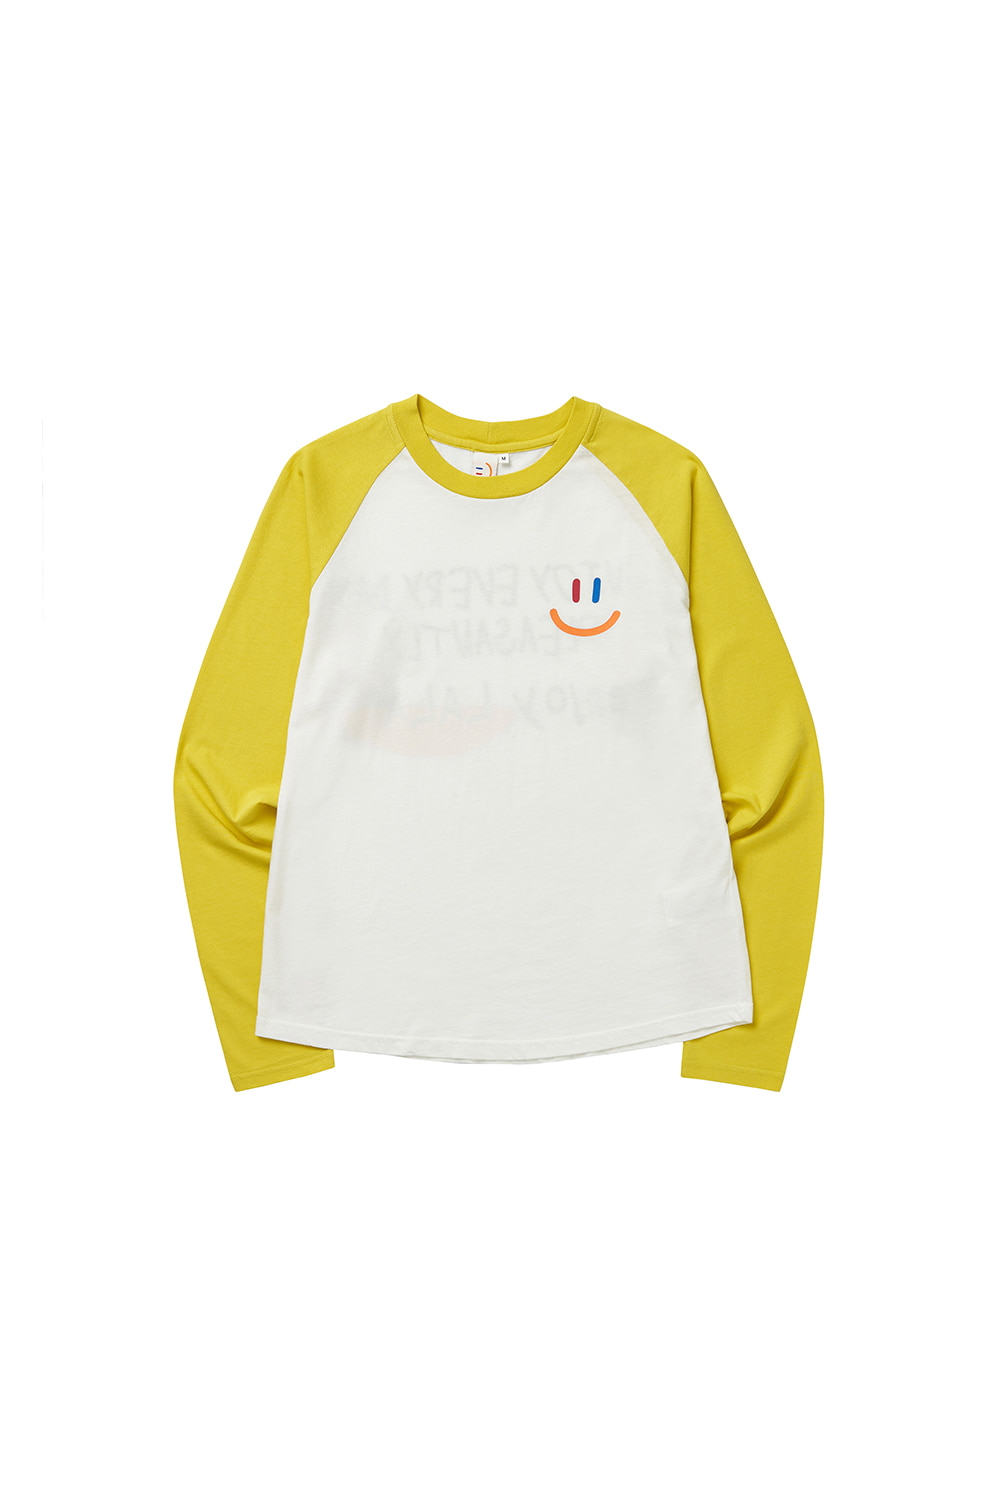 LaLa Kids Raglan T-Shirt [Yellow]